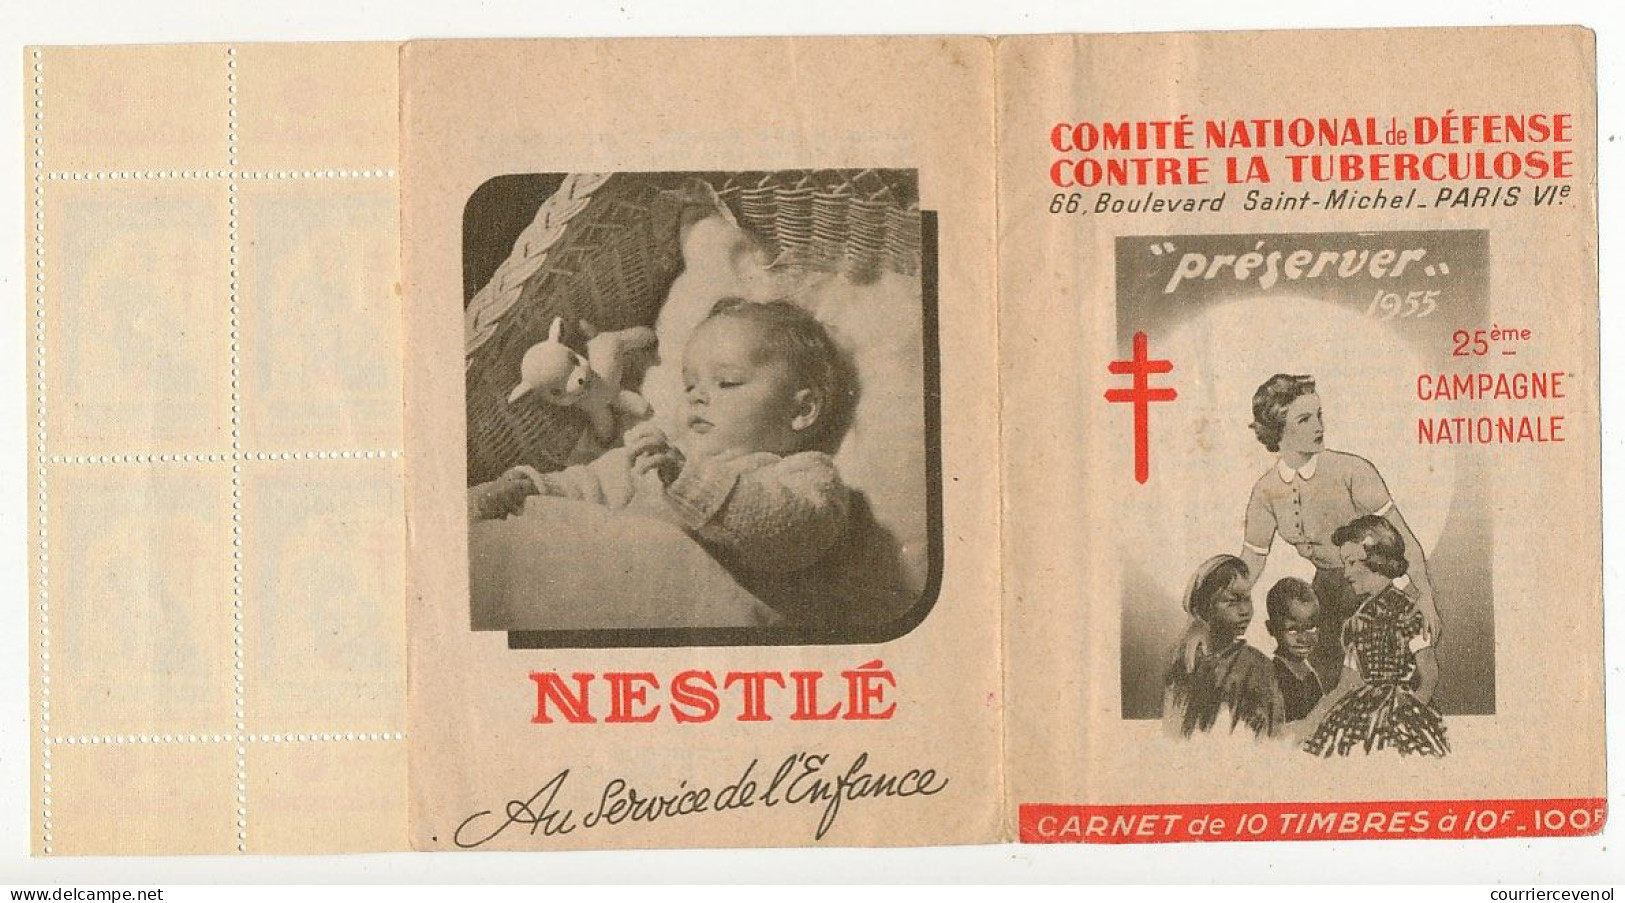 FRANCE - Carnet De 10 Vignettes Antituberculeuses 1955 - "Préserver" - Antituberculeux